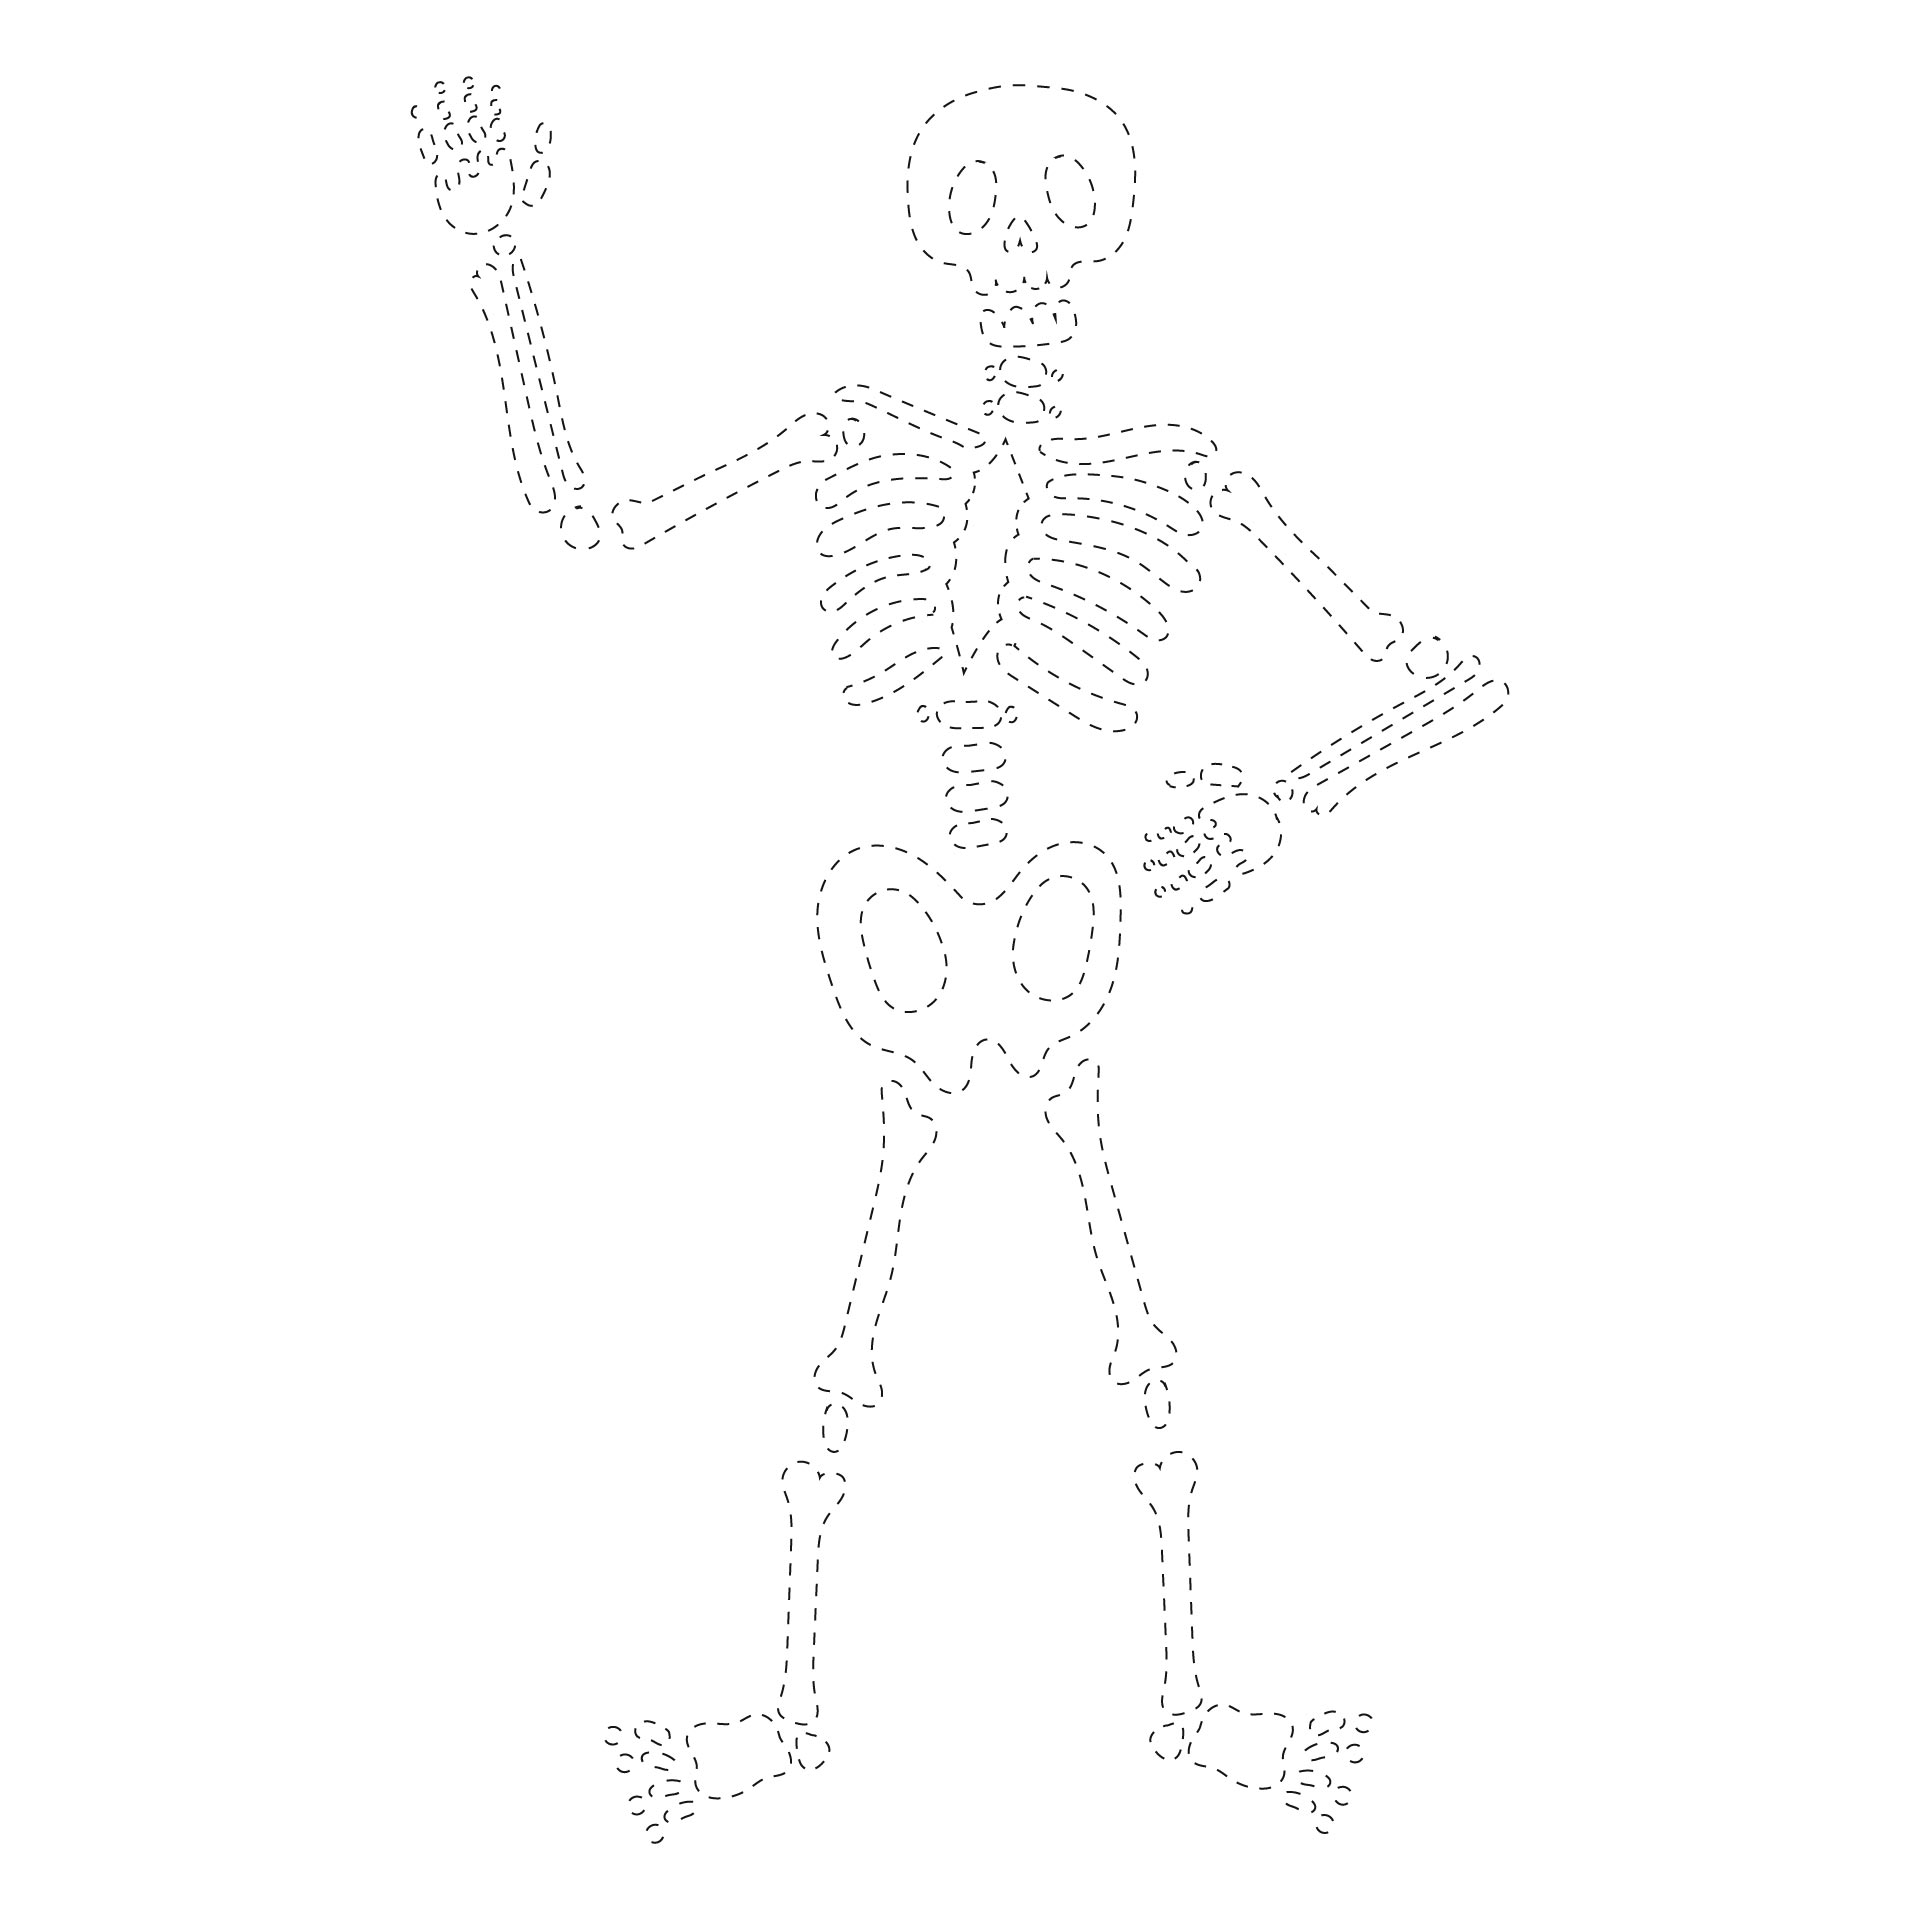 Halloween Skeleton Party Game Printables